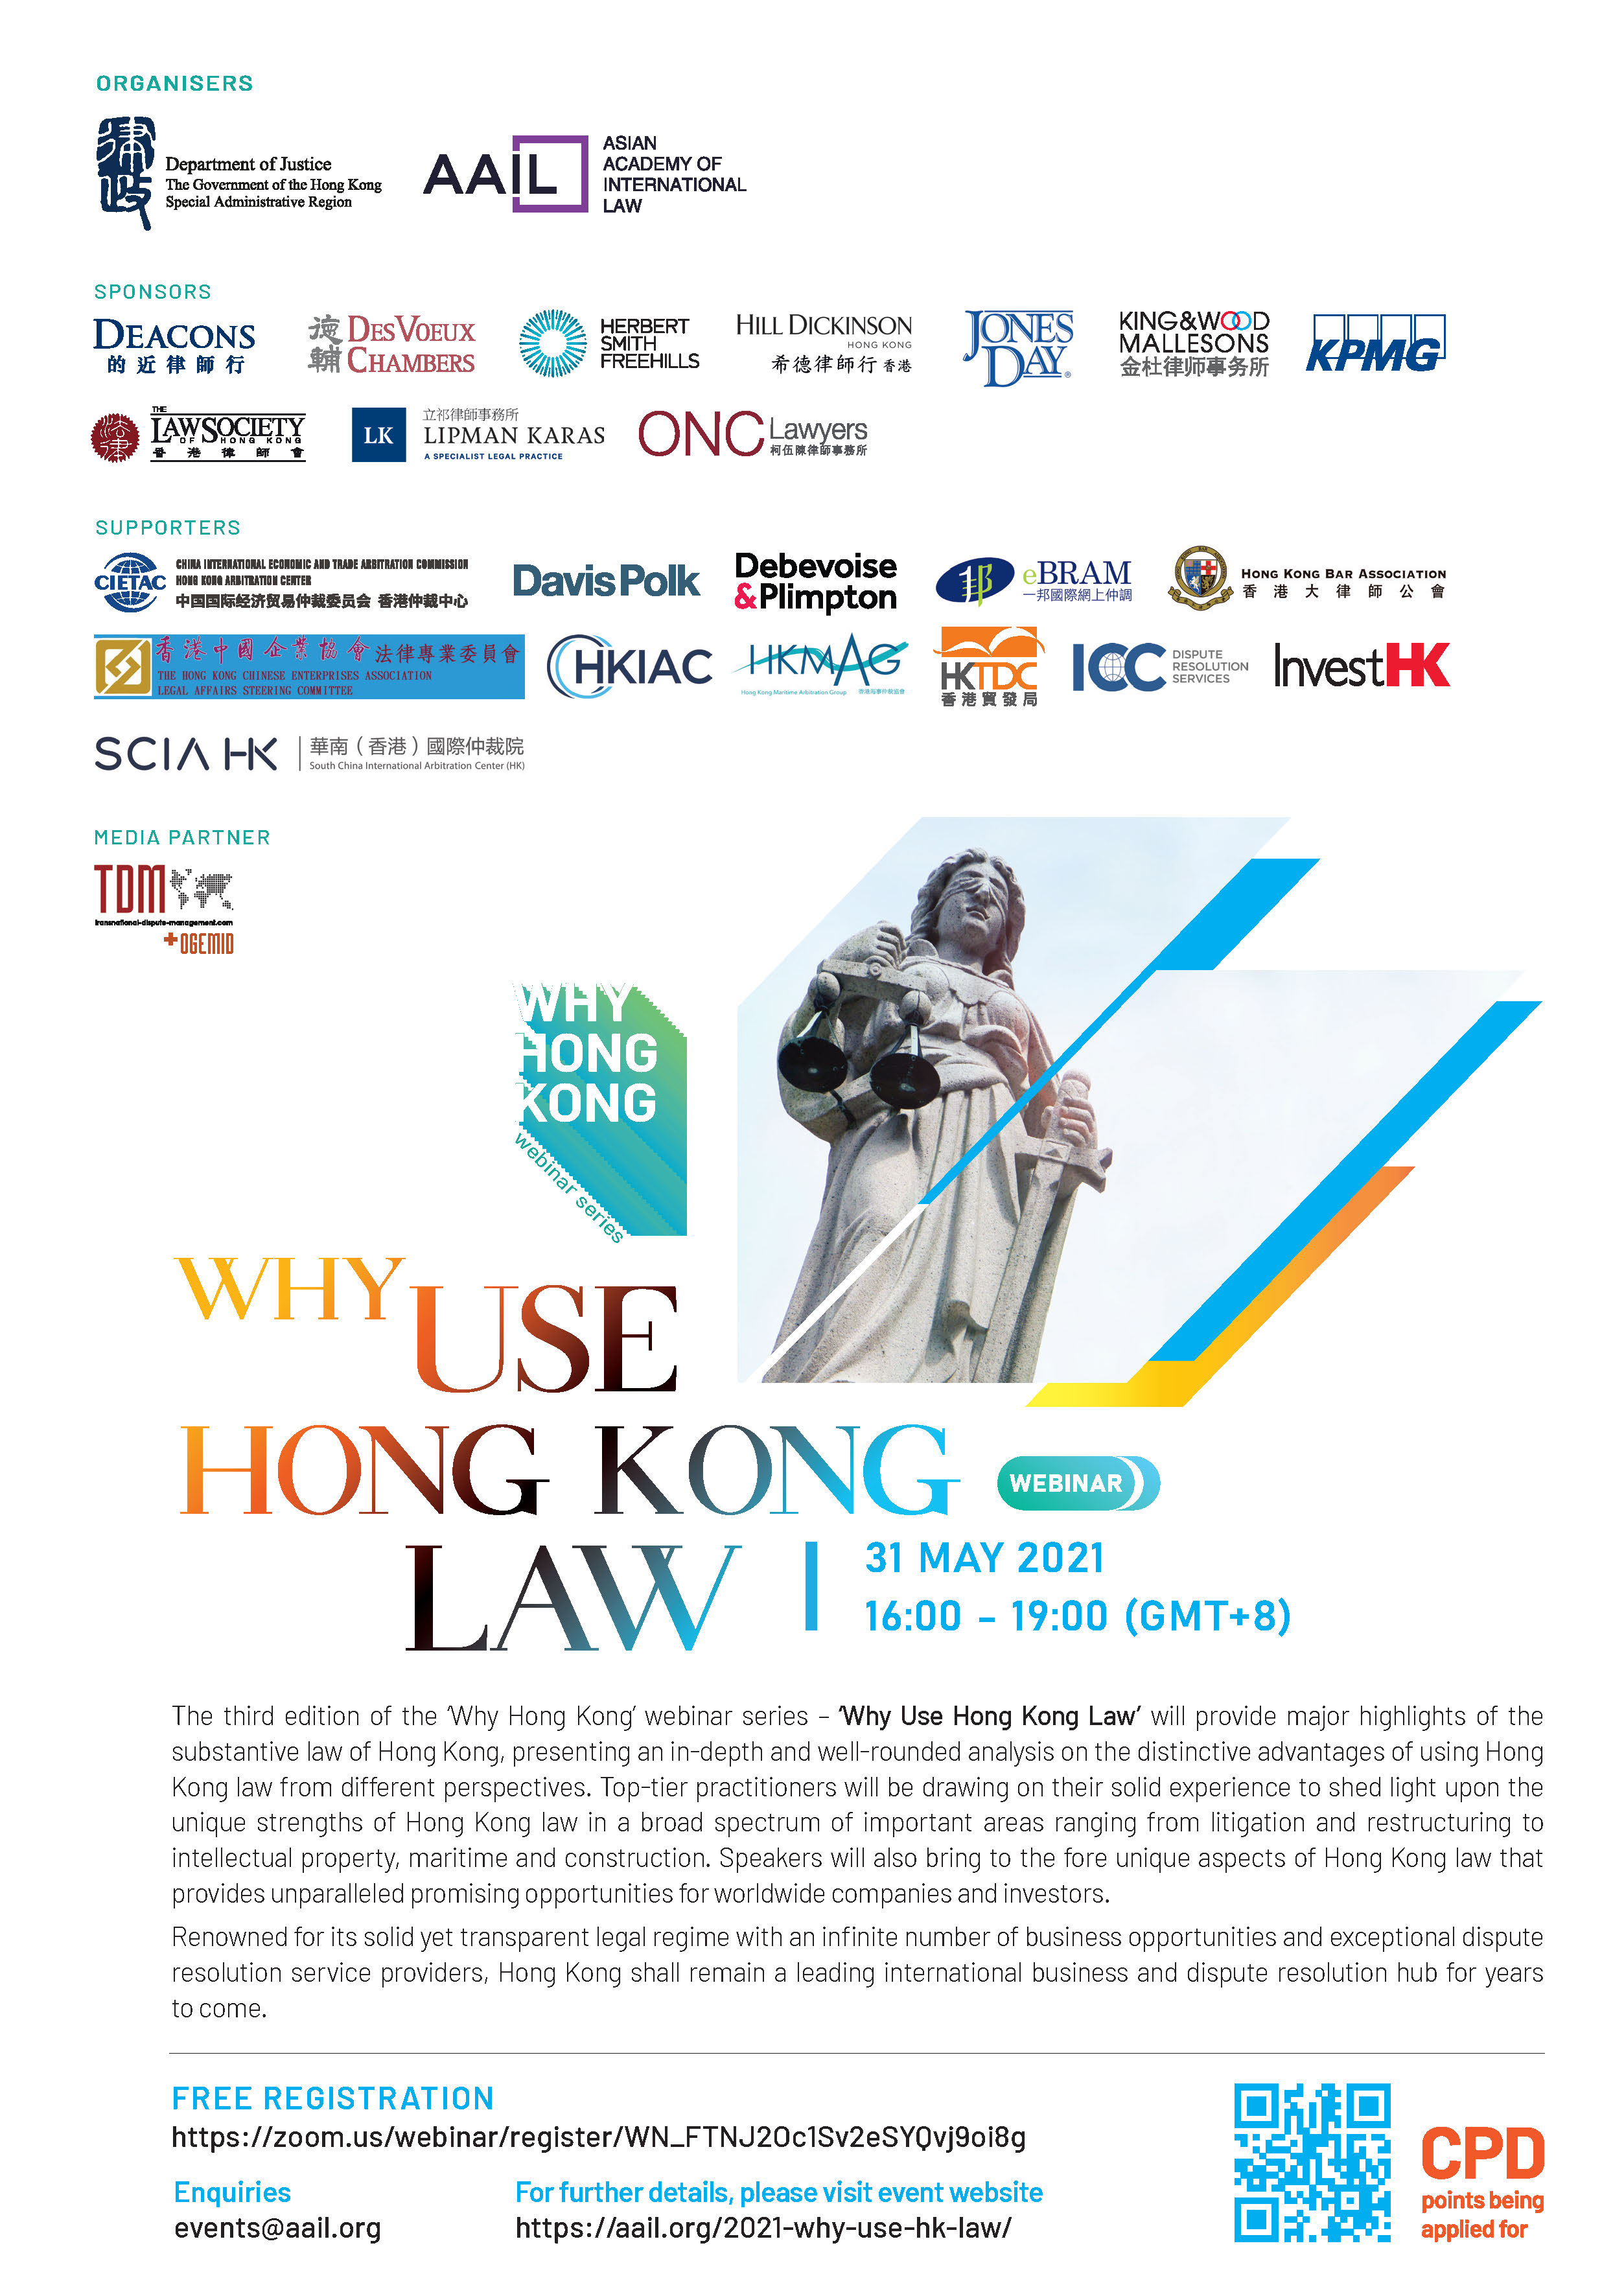  "Why Use Hong Kong Law" webinar